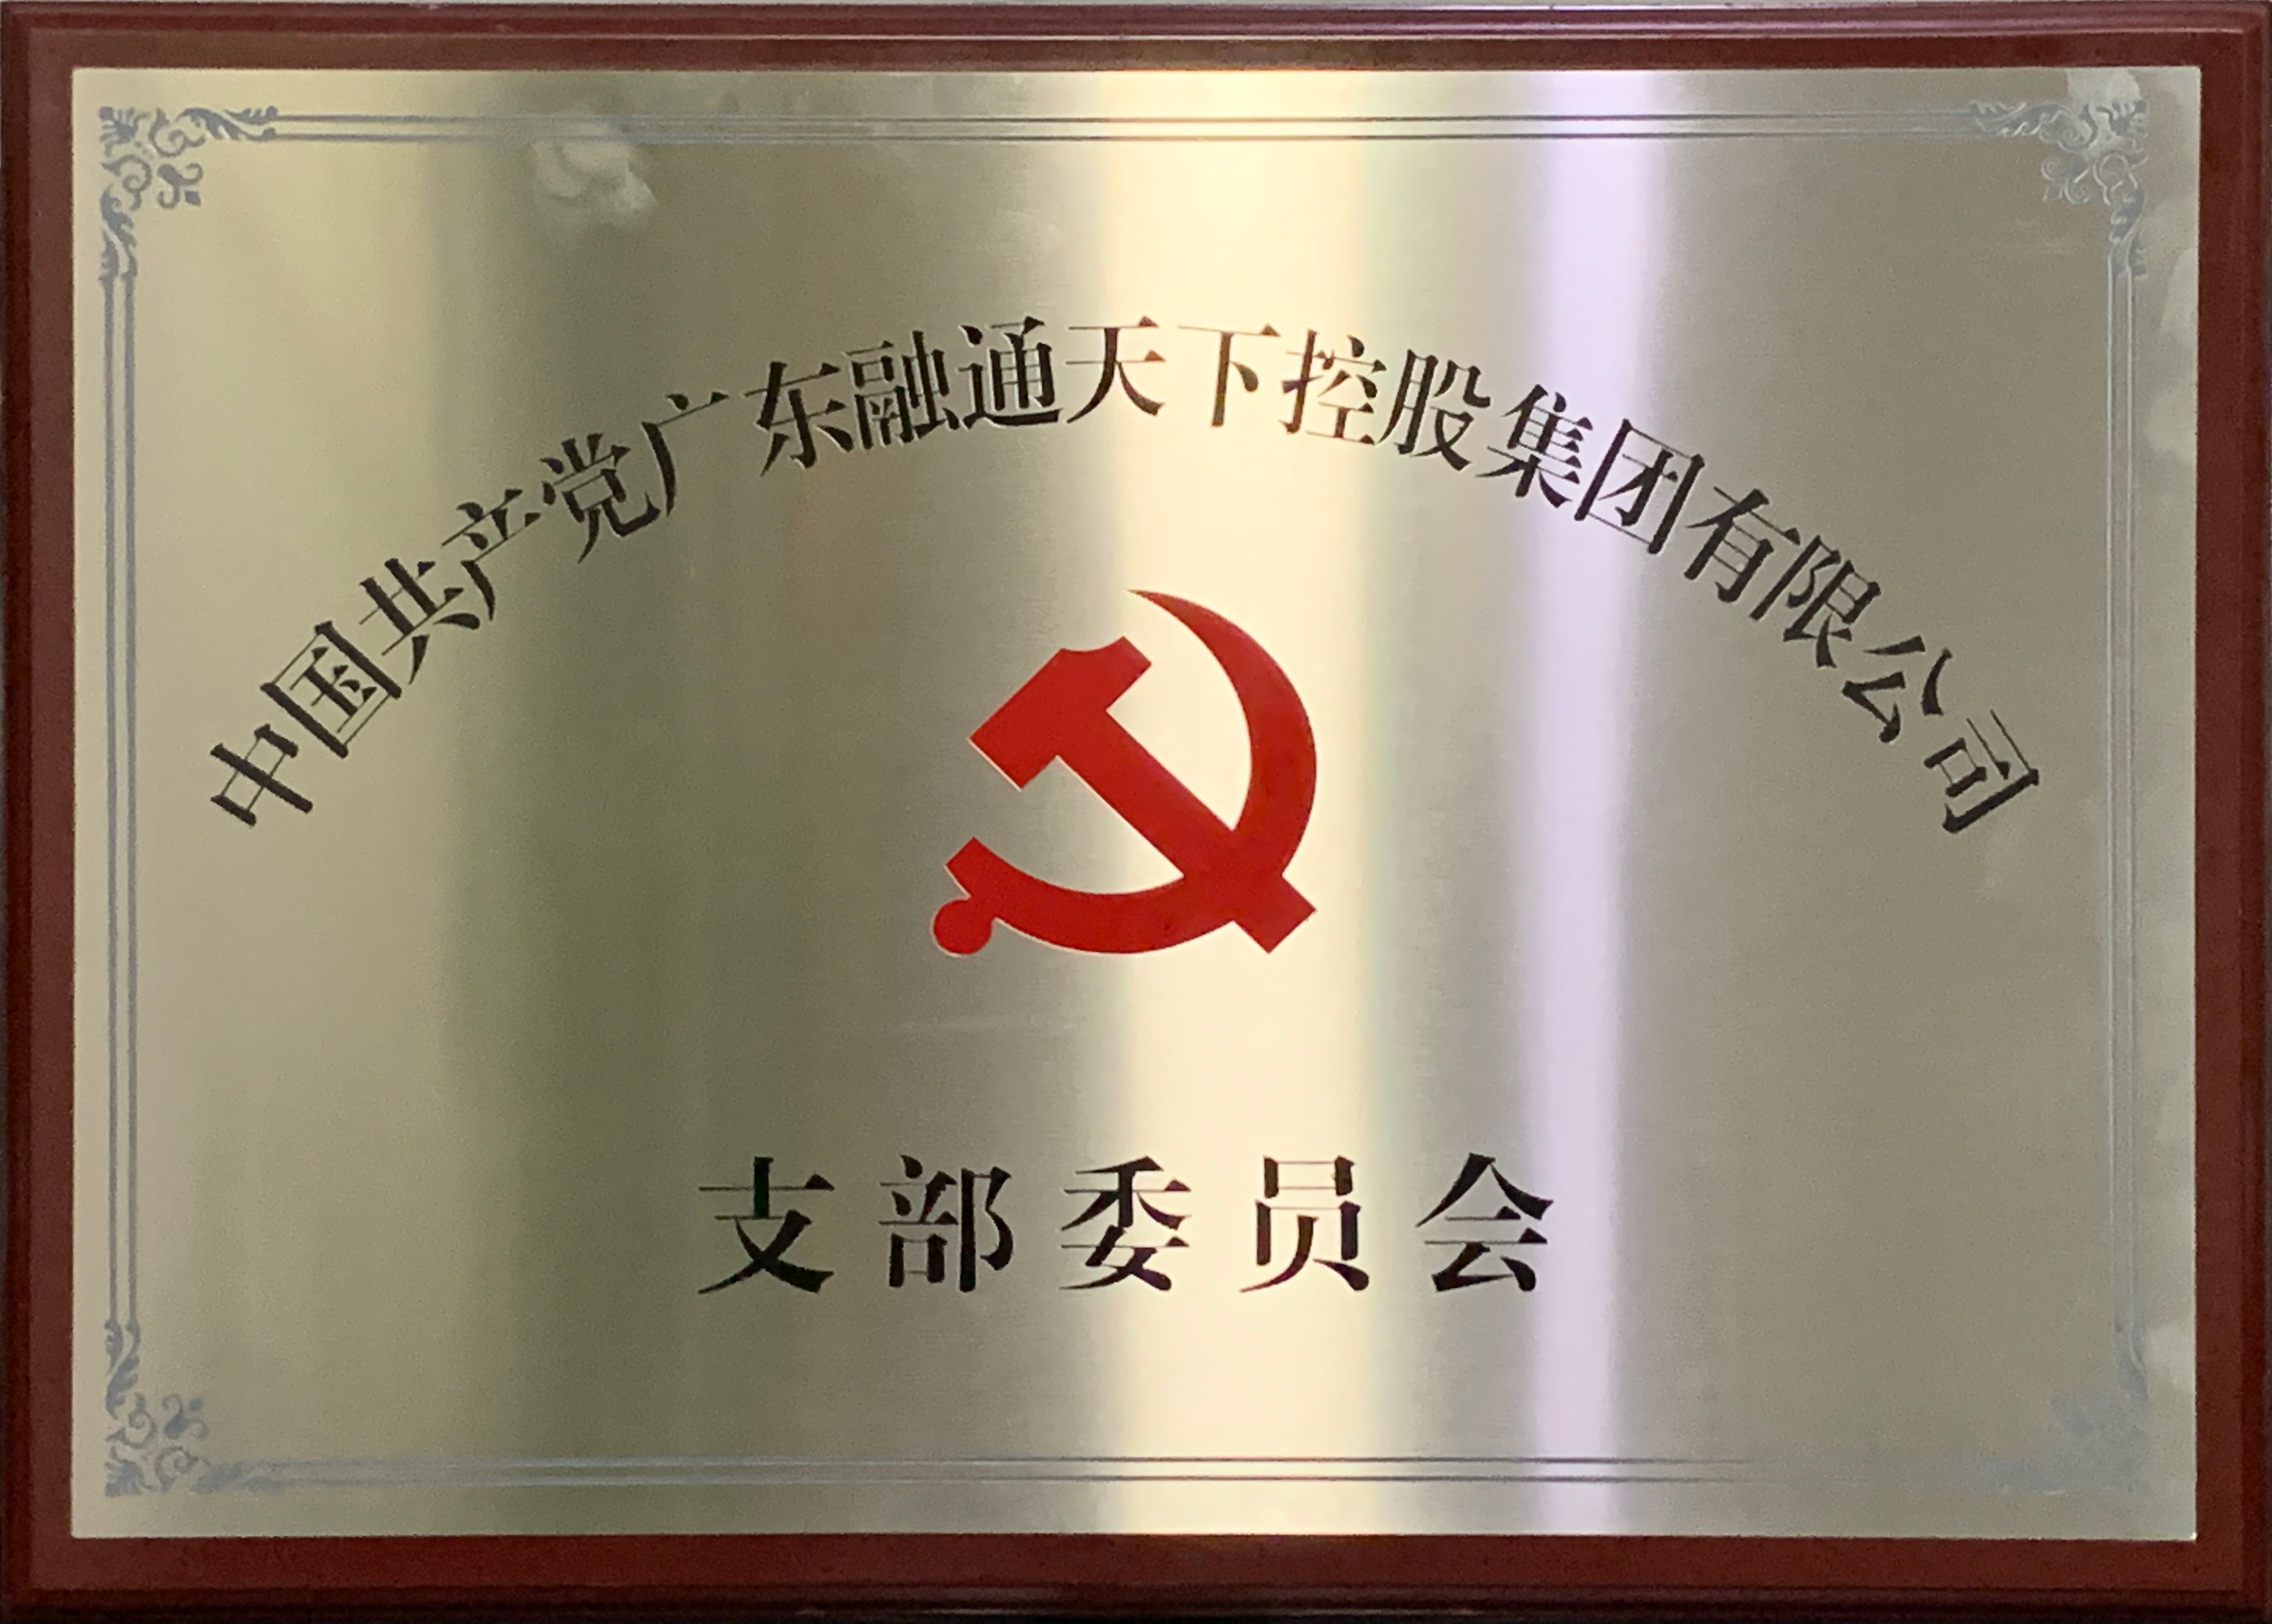 中共廣東融通天下控股集團有限公司支部委員會正式掛牌成立